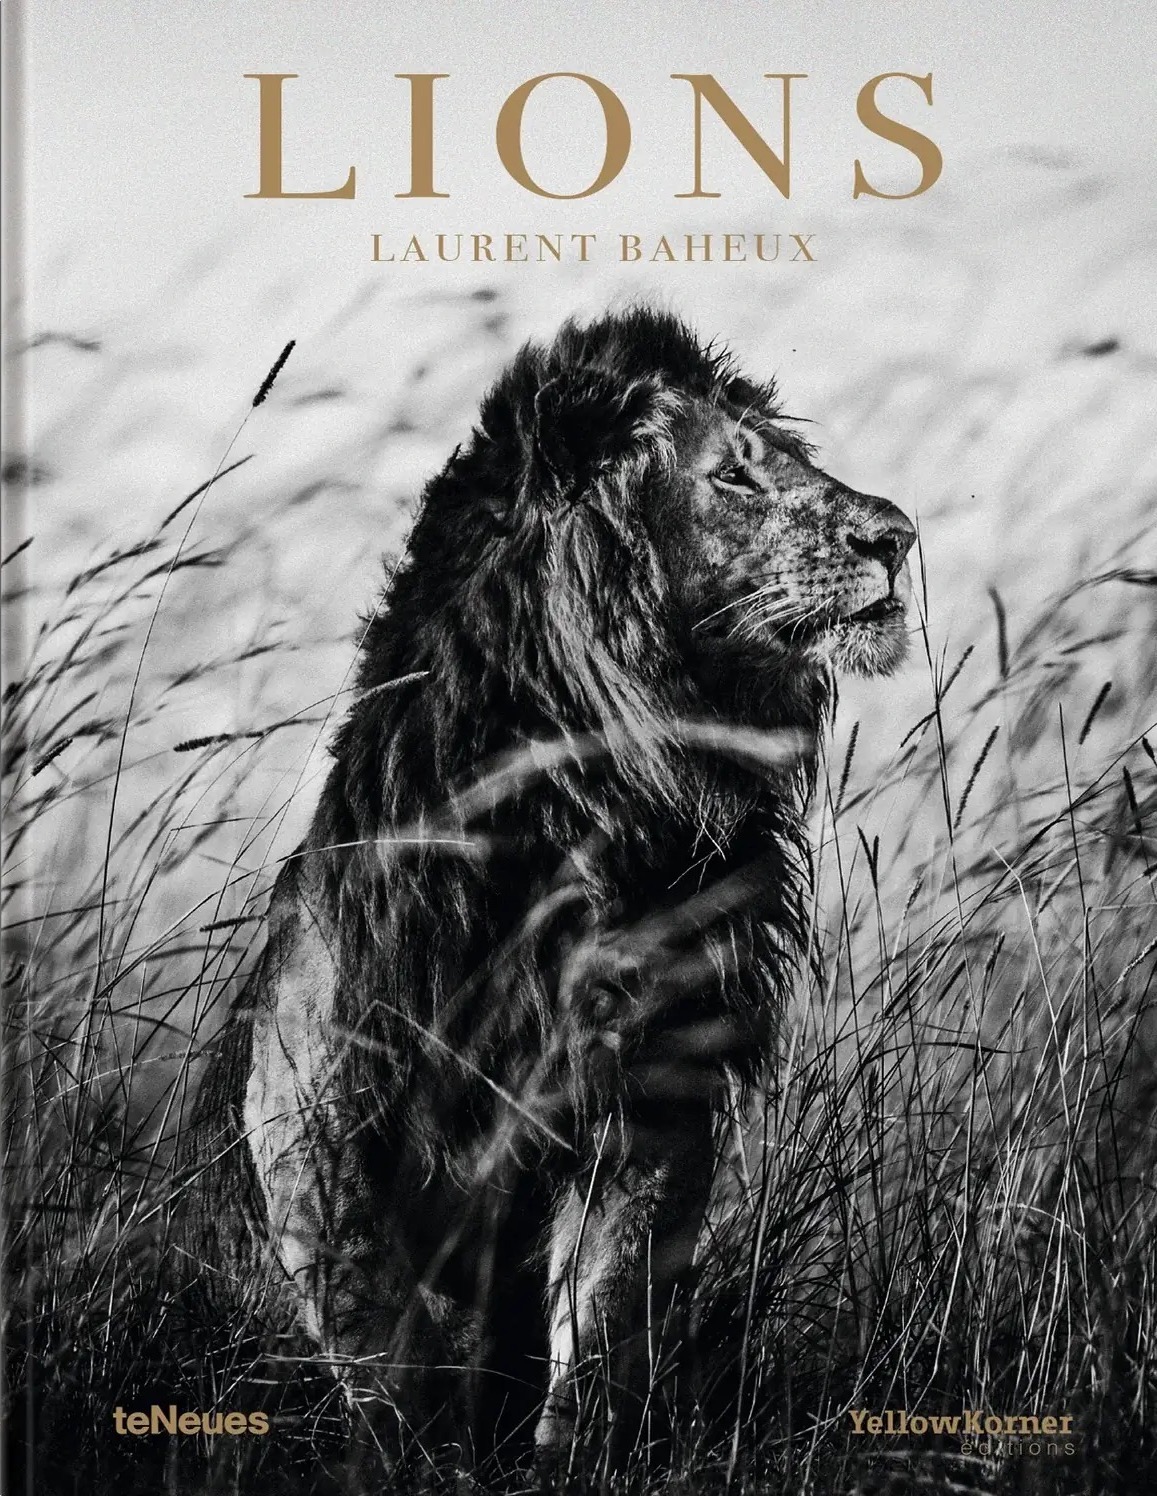 Lions by Laurent Baheux